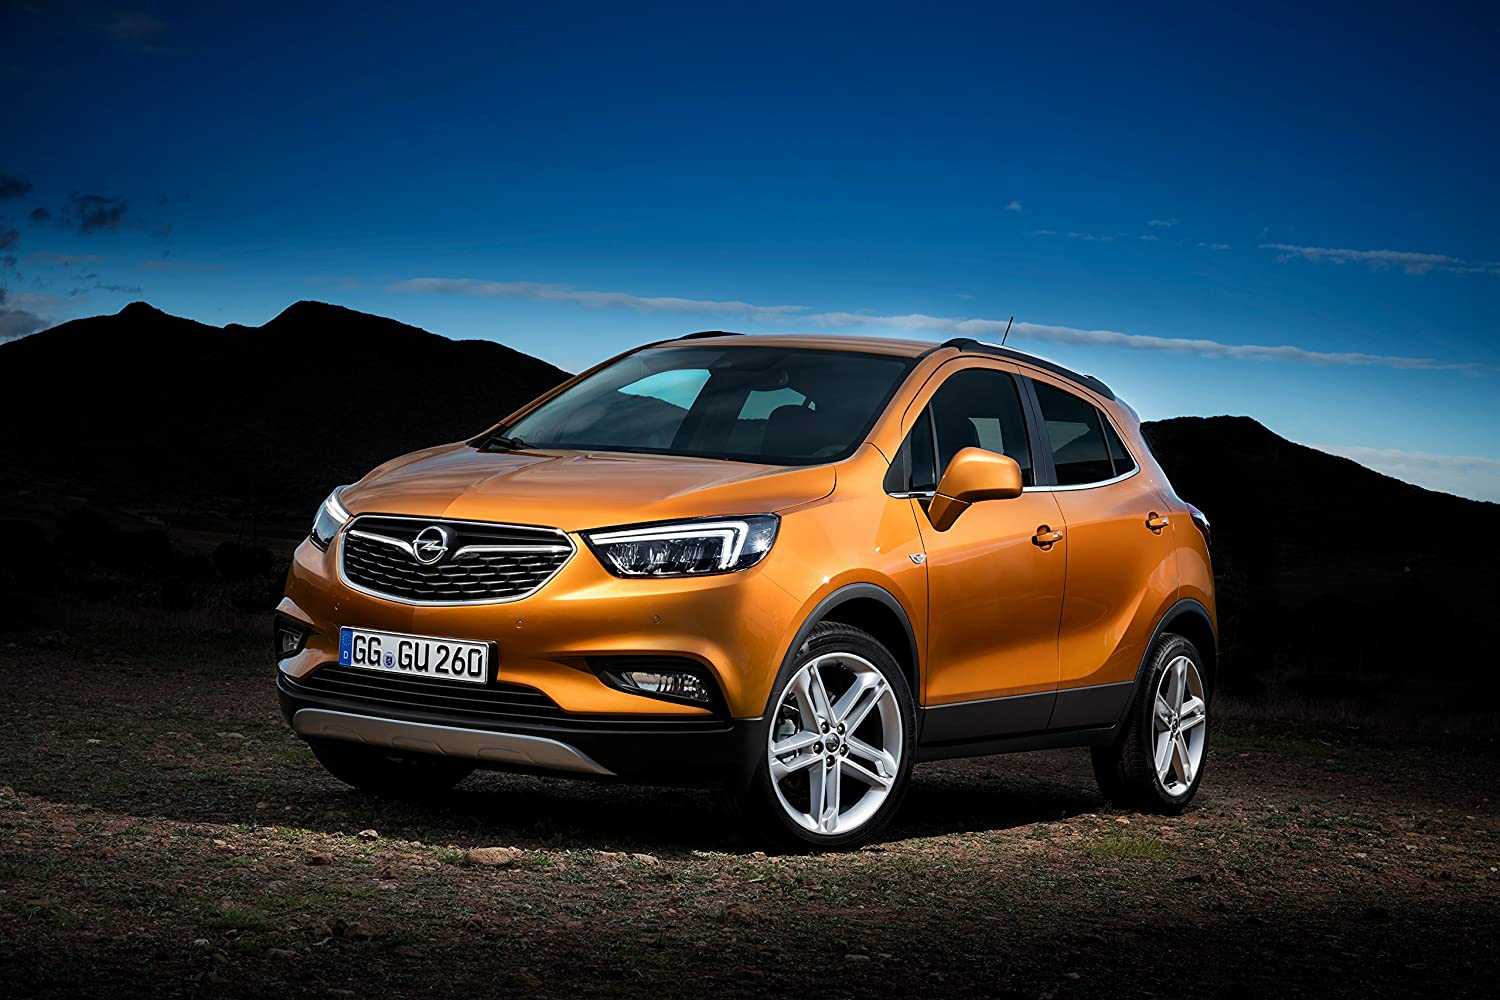 Opel mokka (2012-2020 годы выпуска) – характерные «болезни», стоит ли покупать на вторичном рынке